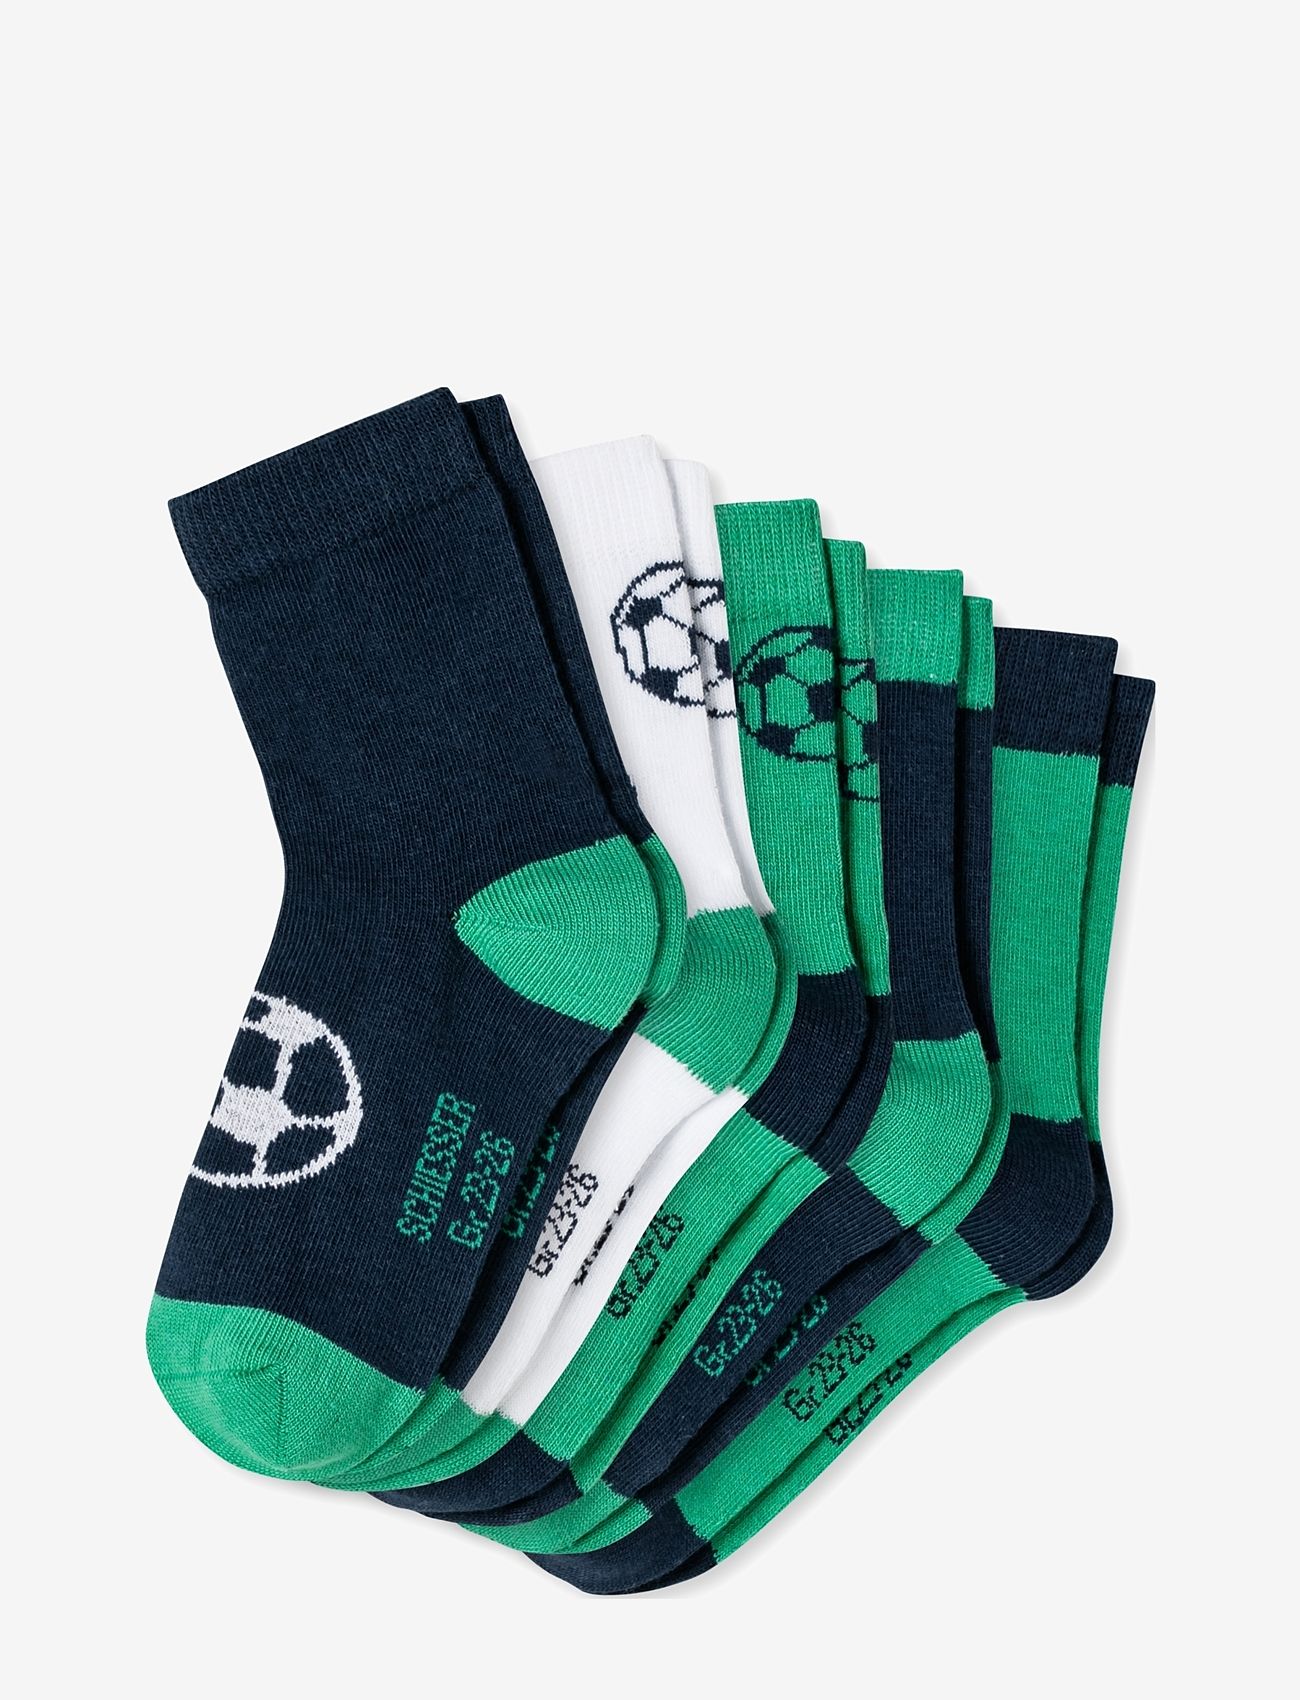 Schiesser - Socks - die niedrigsten preise - assorted 1 - 1